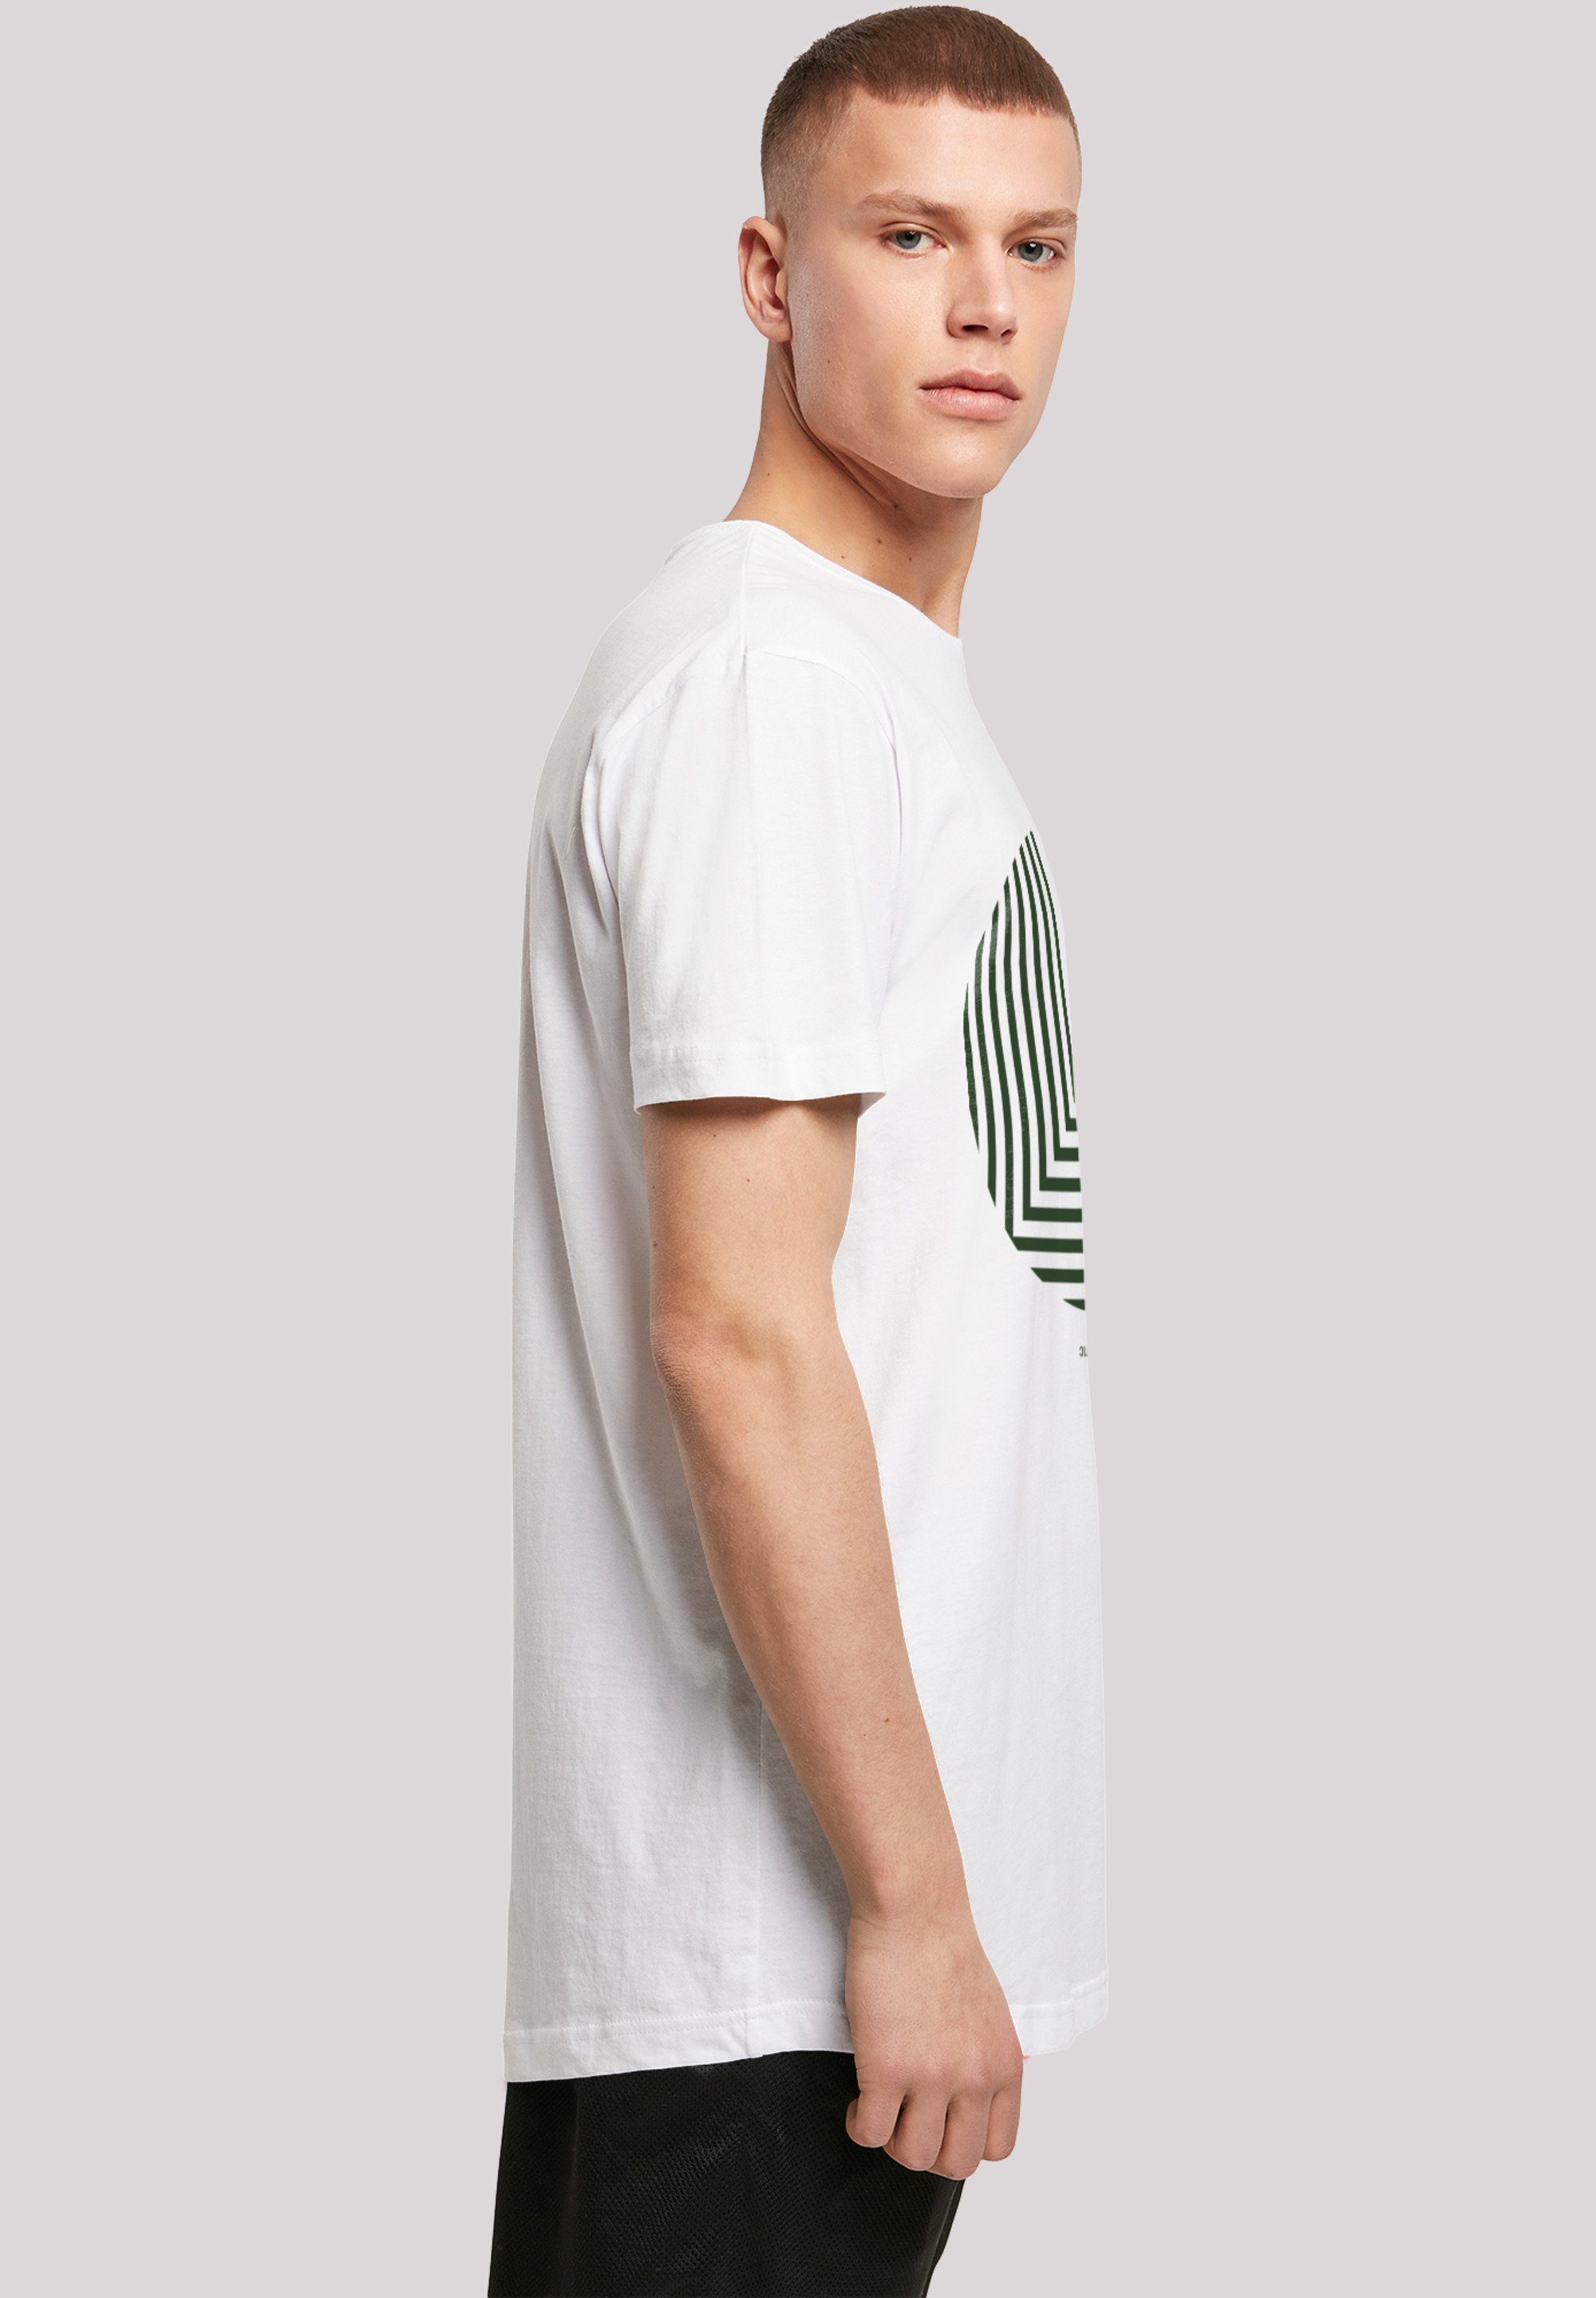 F4NT4STIC T-Shirt Geometrics Grün weiß Print